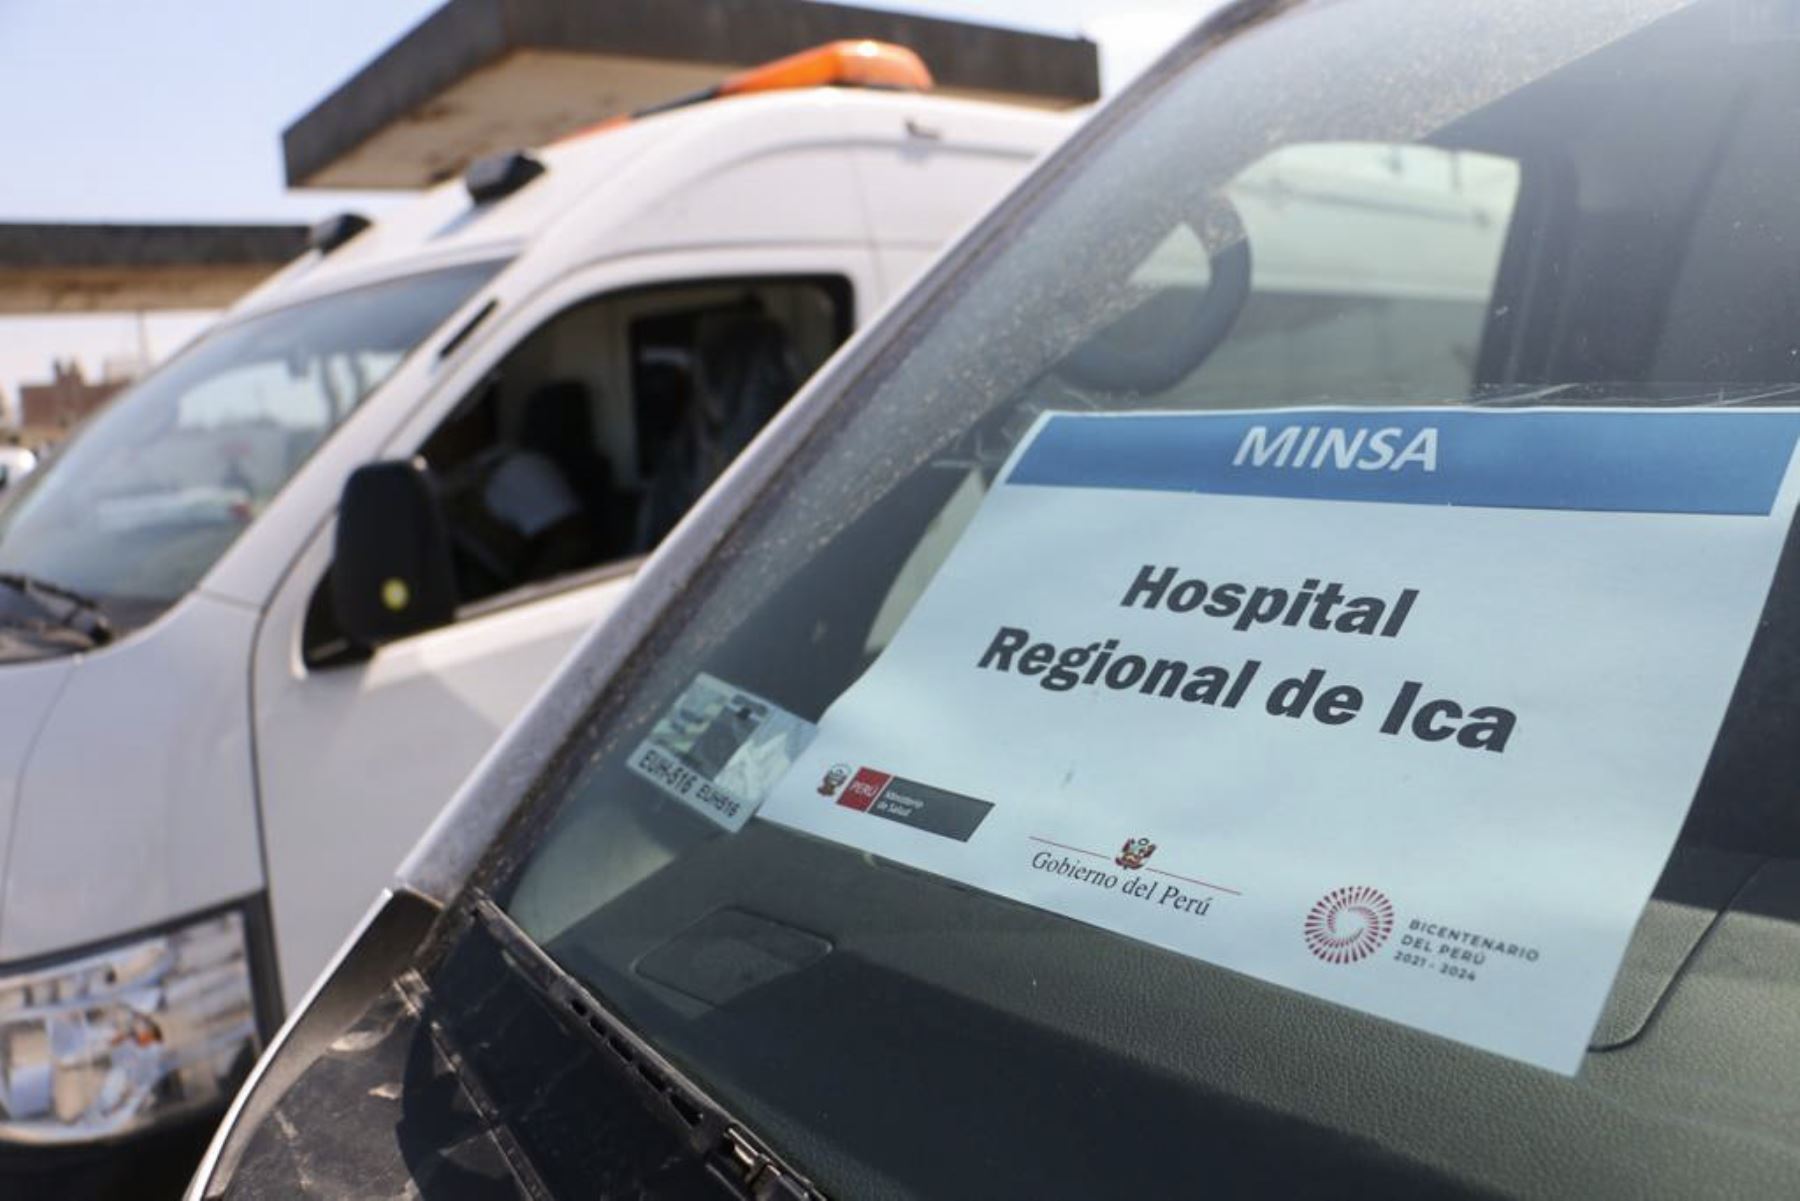 El Minsa entregó cuatro ambulacias tipo II totalmente equipadas al Gobierno Regional de Ica para fortalecer el primer nivel de atención y su capacidad de asistencia médica a favor de la población. Además, proporcionó equipos e insumos médicos.

Foto: ANDINA/MINSA